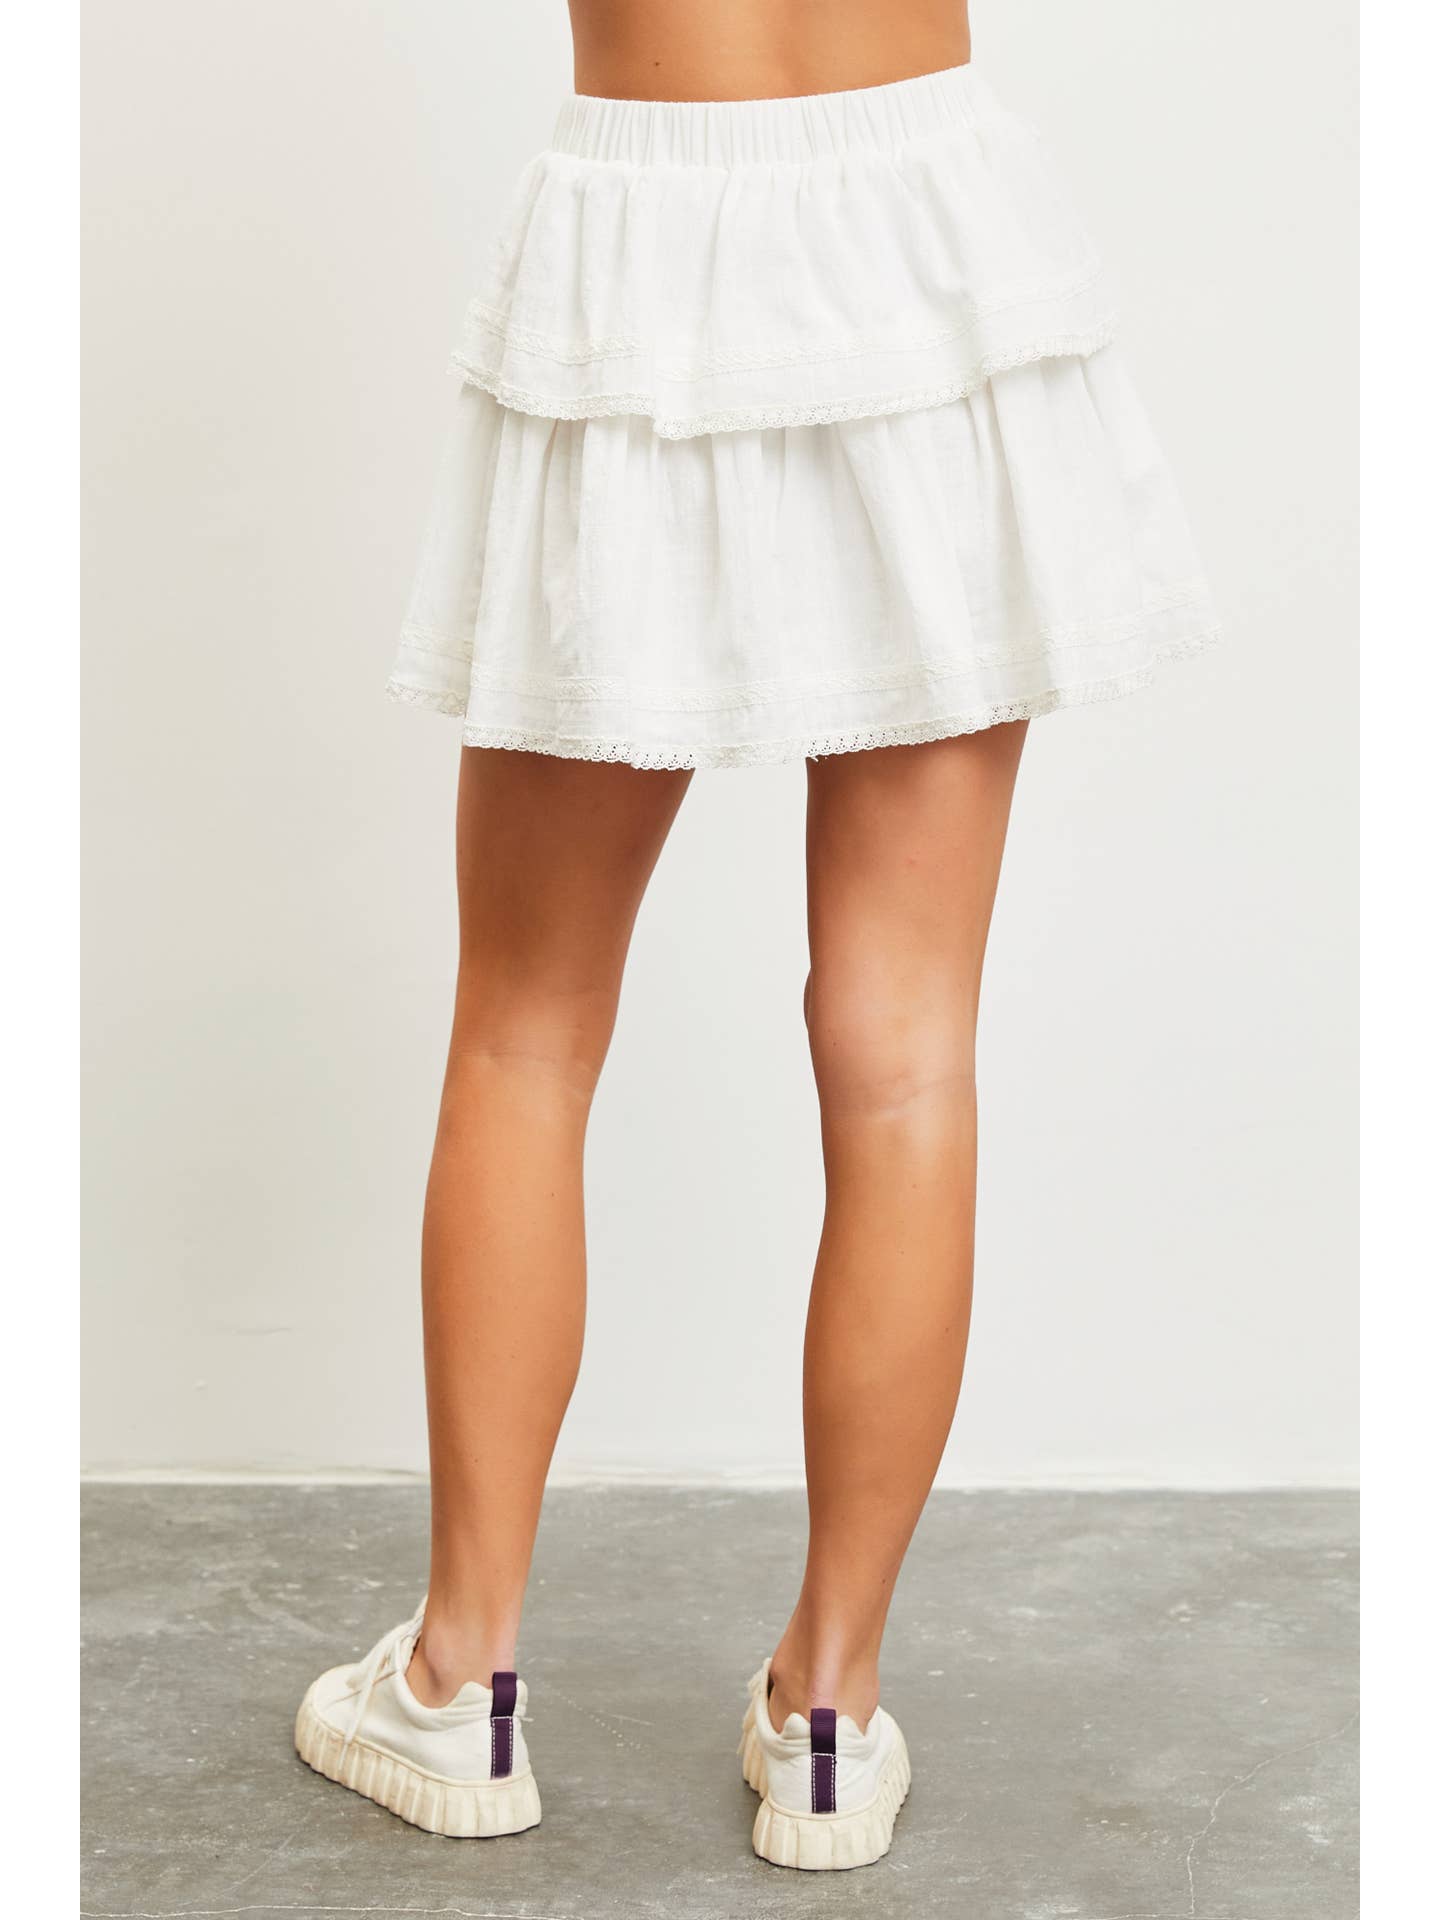 Lace Ruffle Mini Skirt